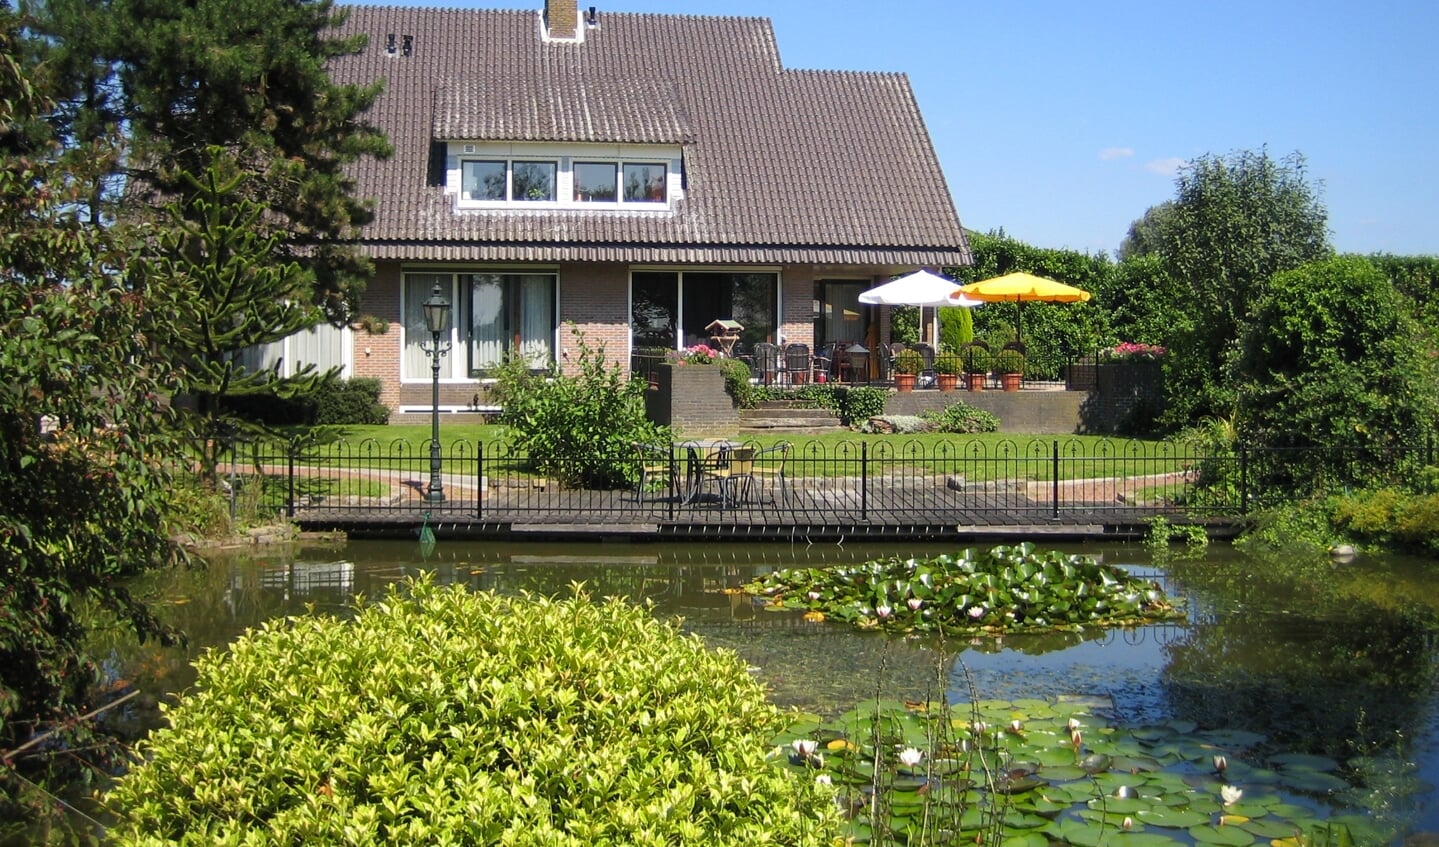 Zorgvilla Poort van Wijk biedt kleinschalige en persoonlijke dementiezorg in een huiselijke omgeving. 